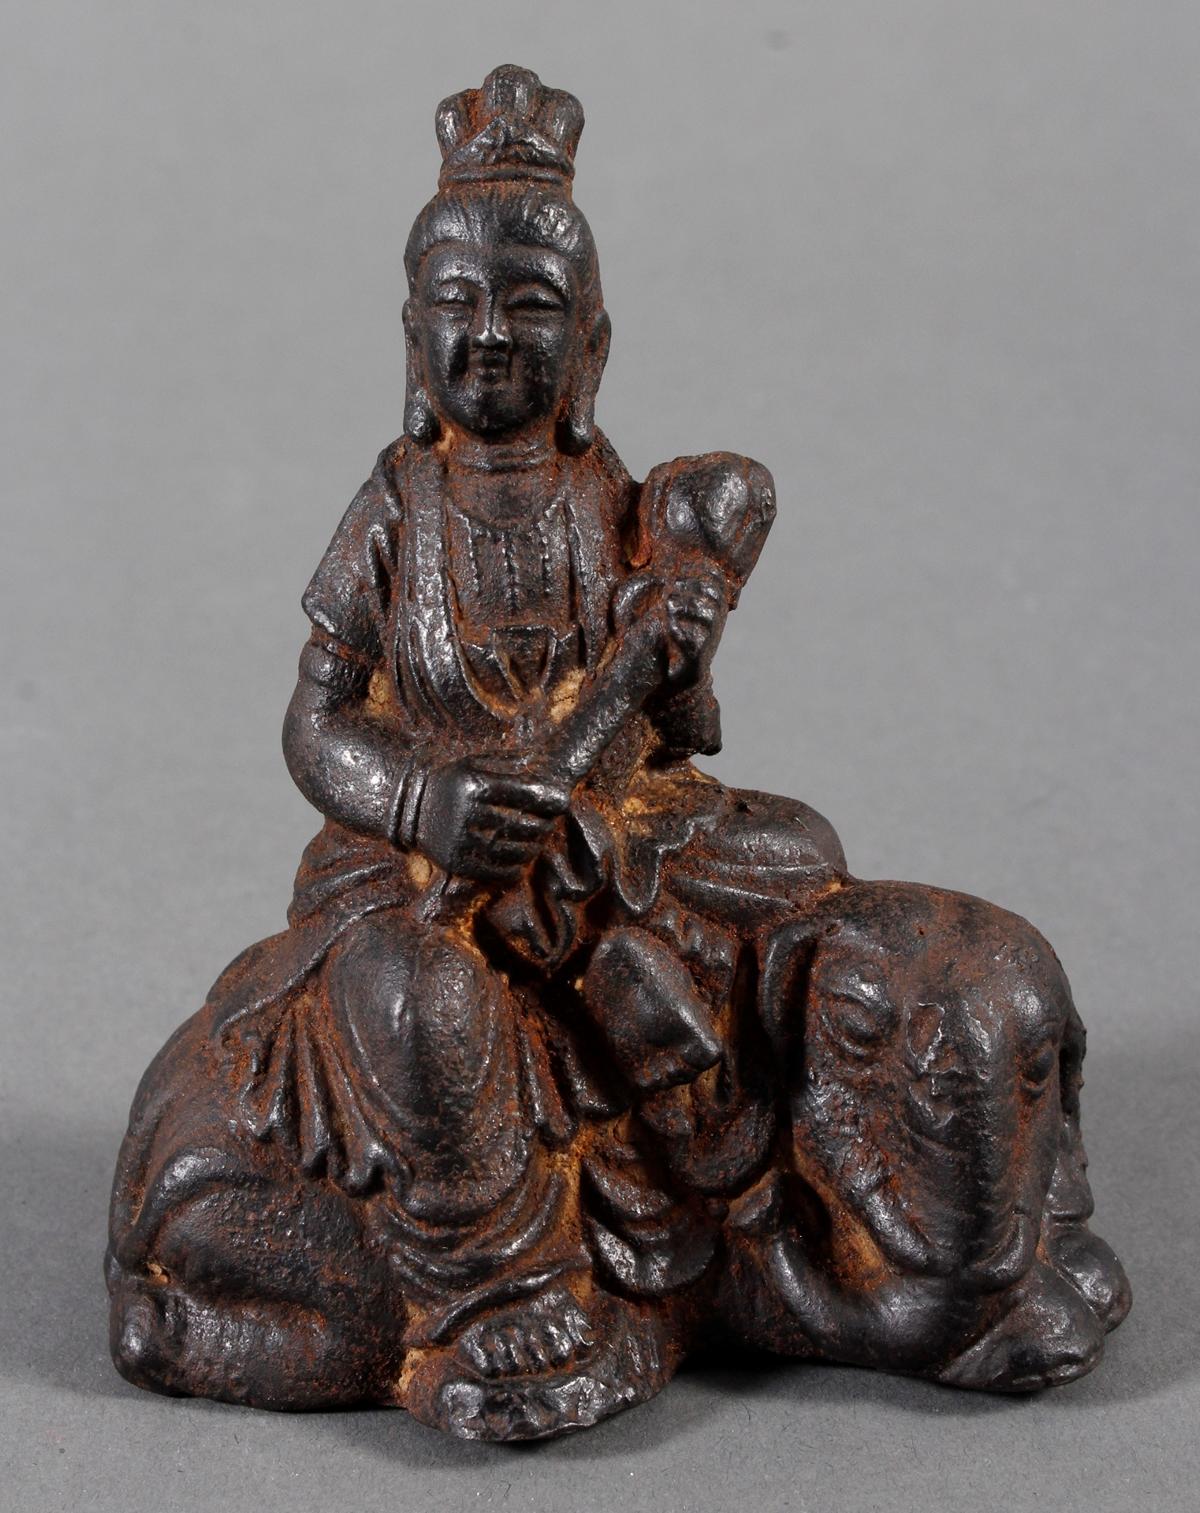 Guanin auf Elefant sitzen, aus Eisen gefertigt, Ming Dynasty